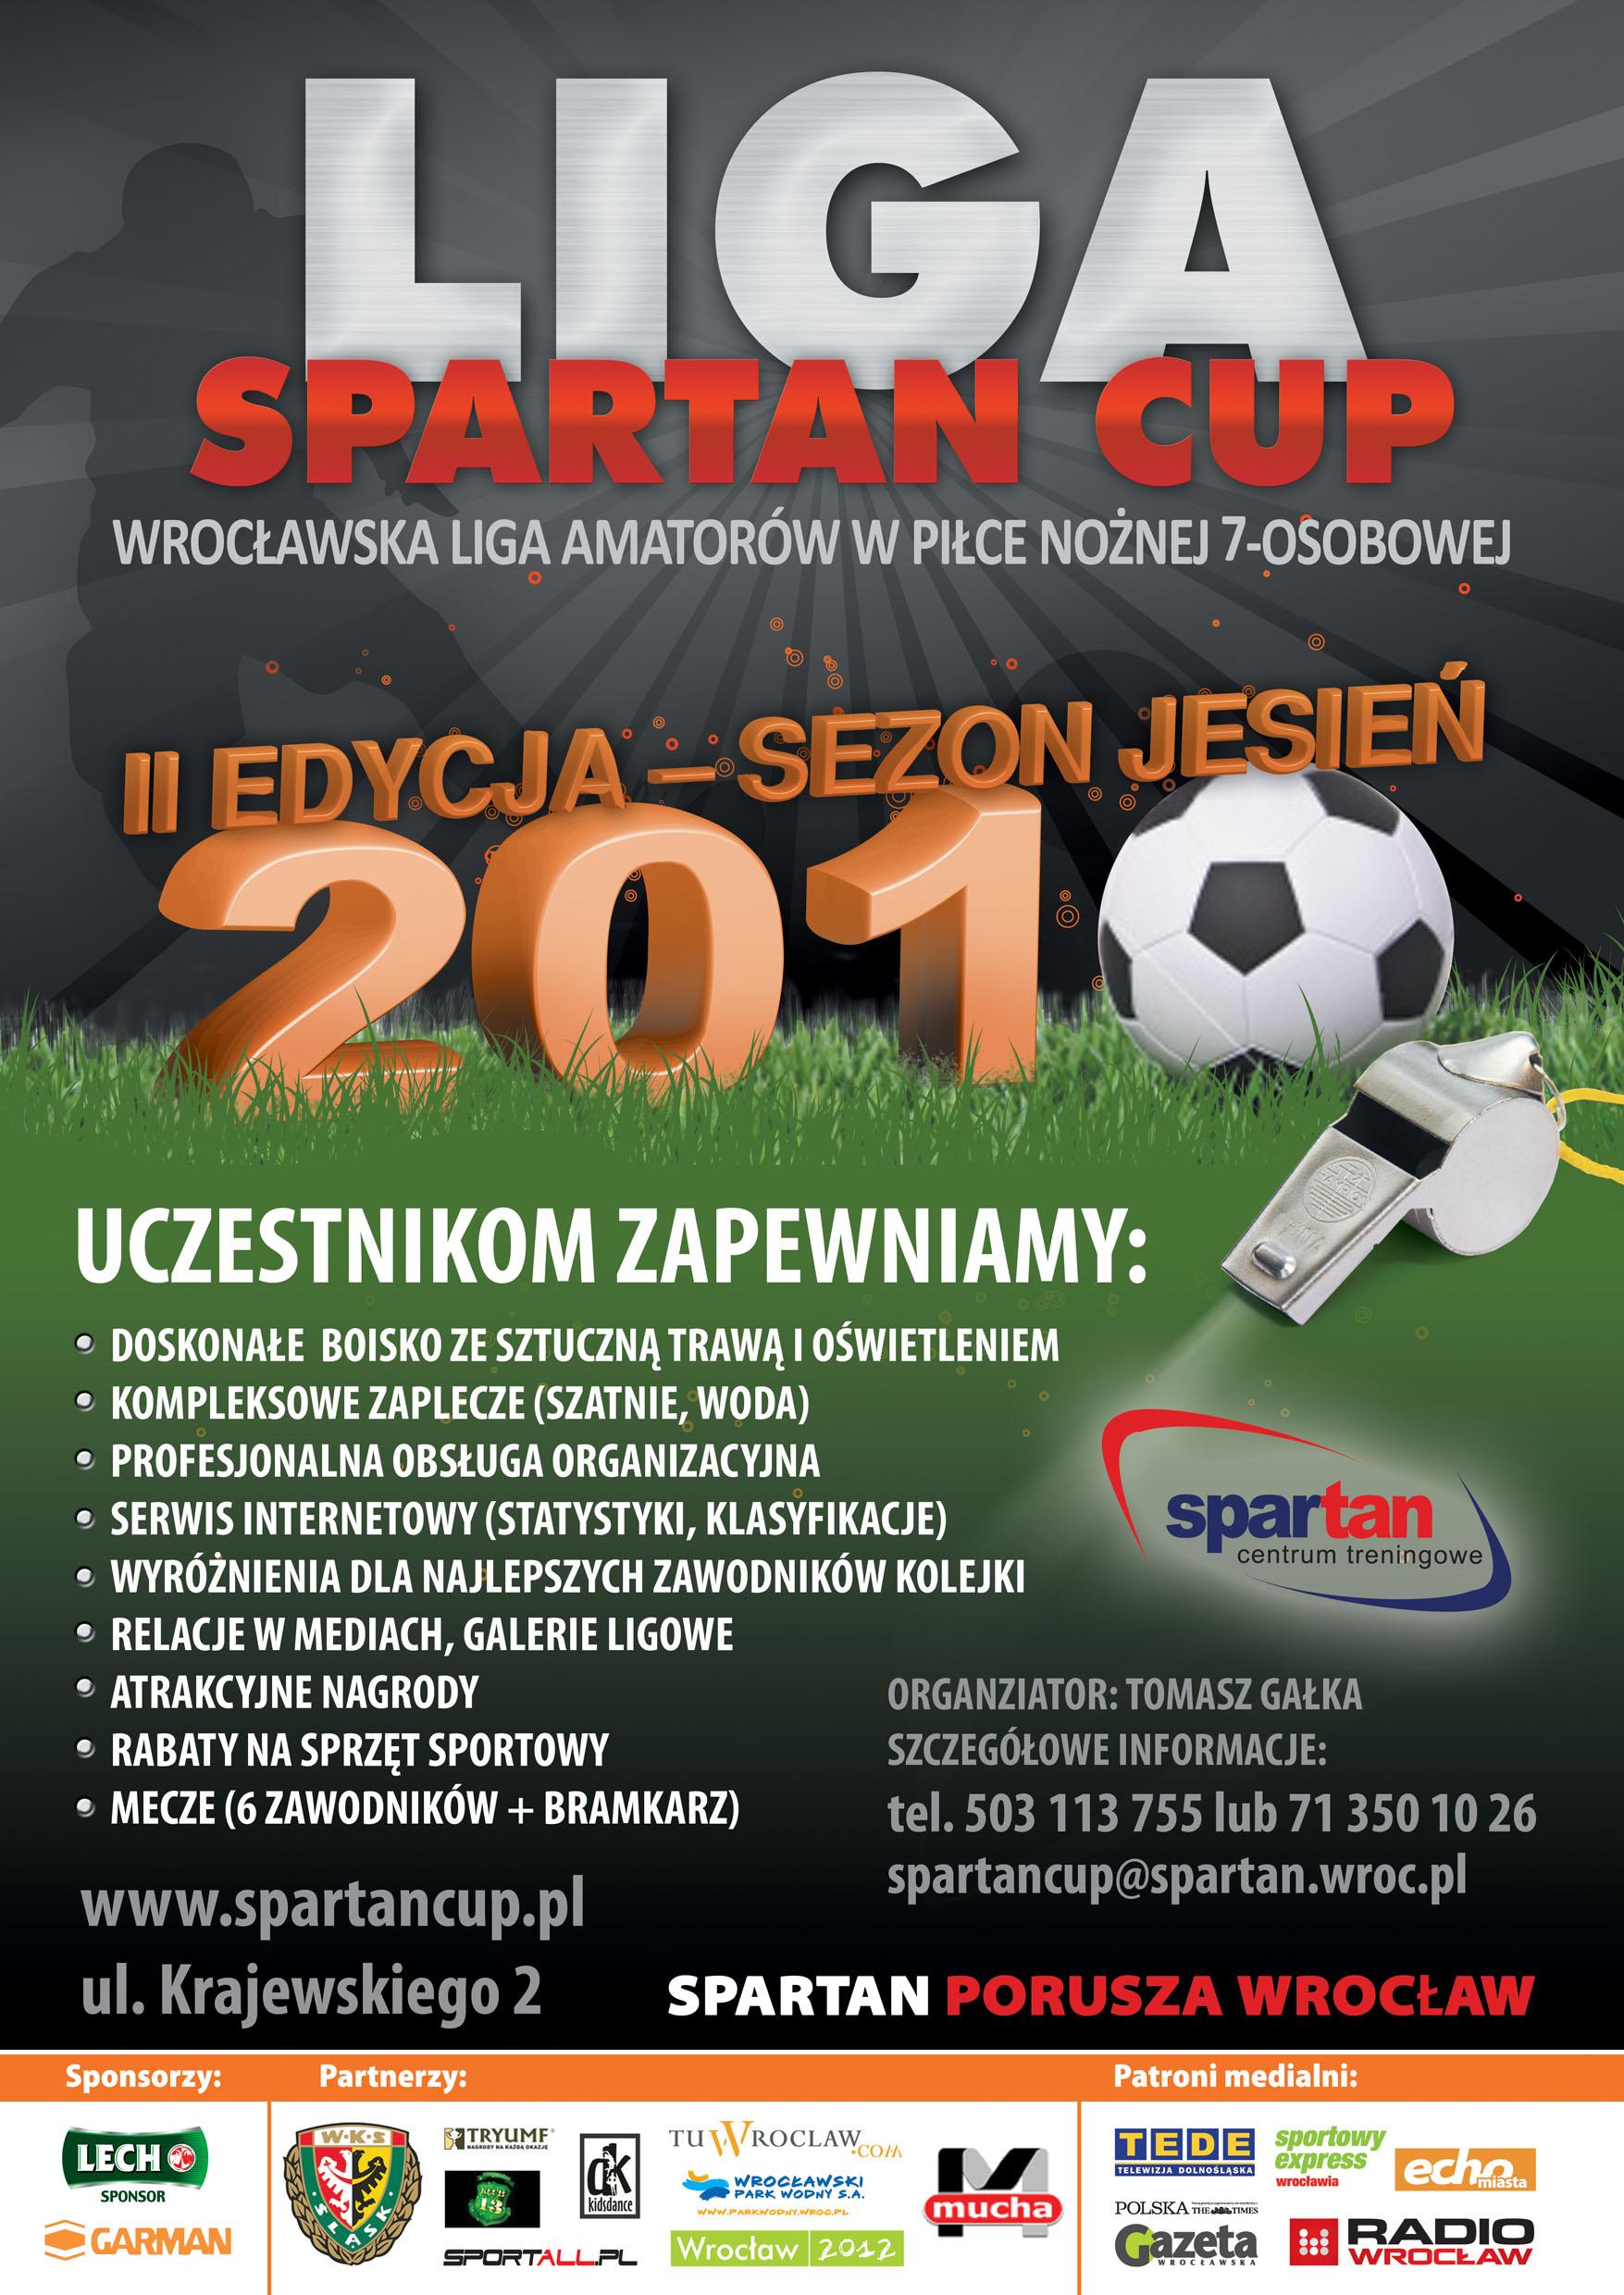 Trwają zapisy do ligi Spartan Cup, SPARTAN